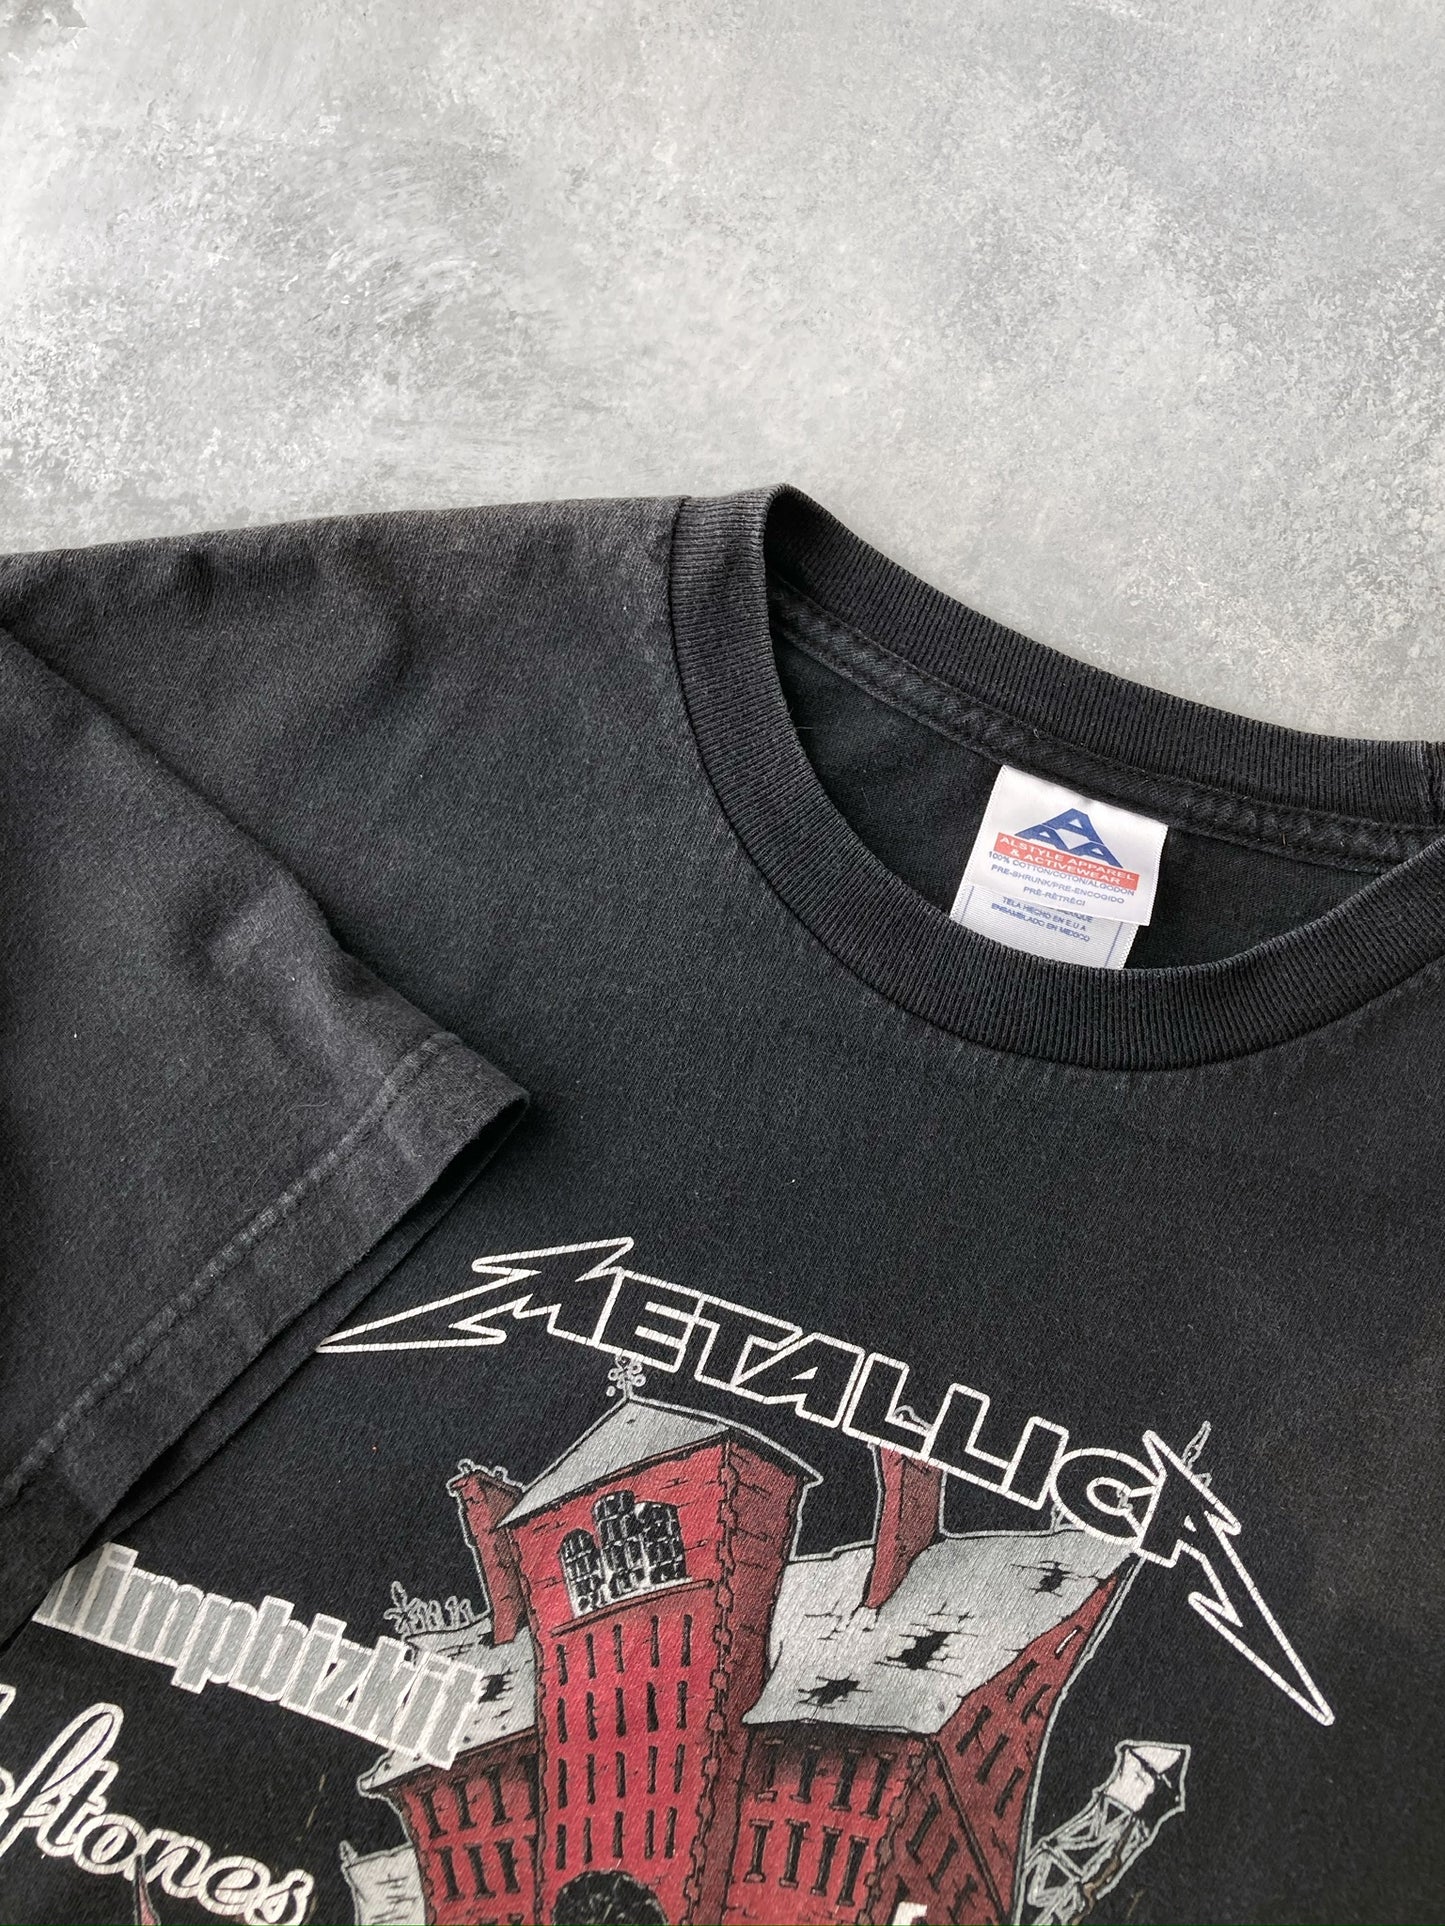 Summer Sanitarium Tour T-Shirt '03 - Large